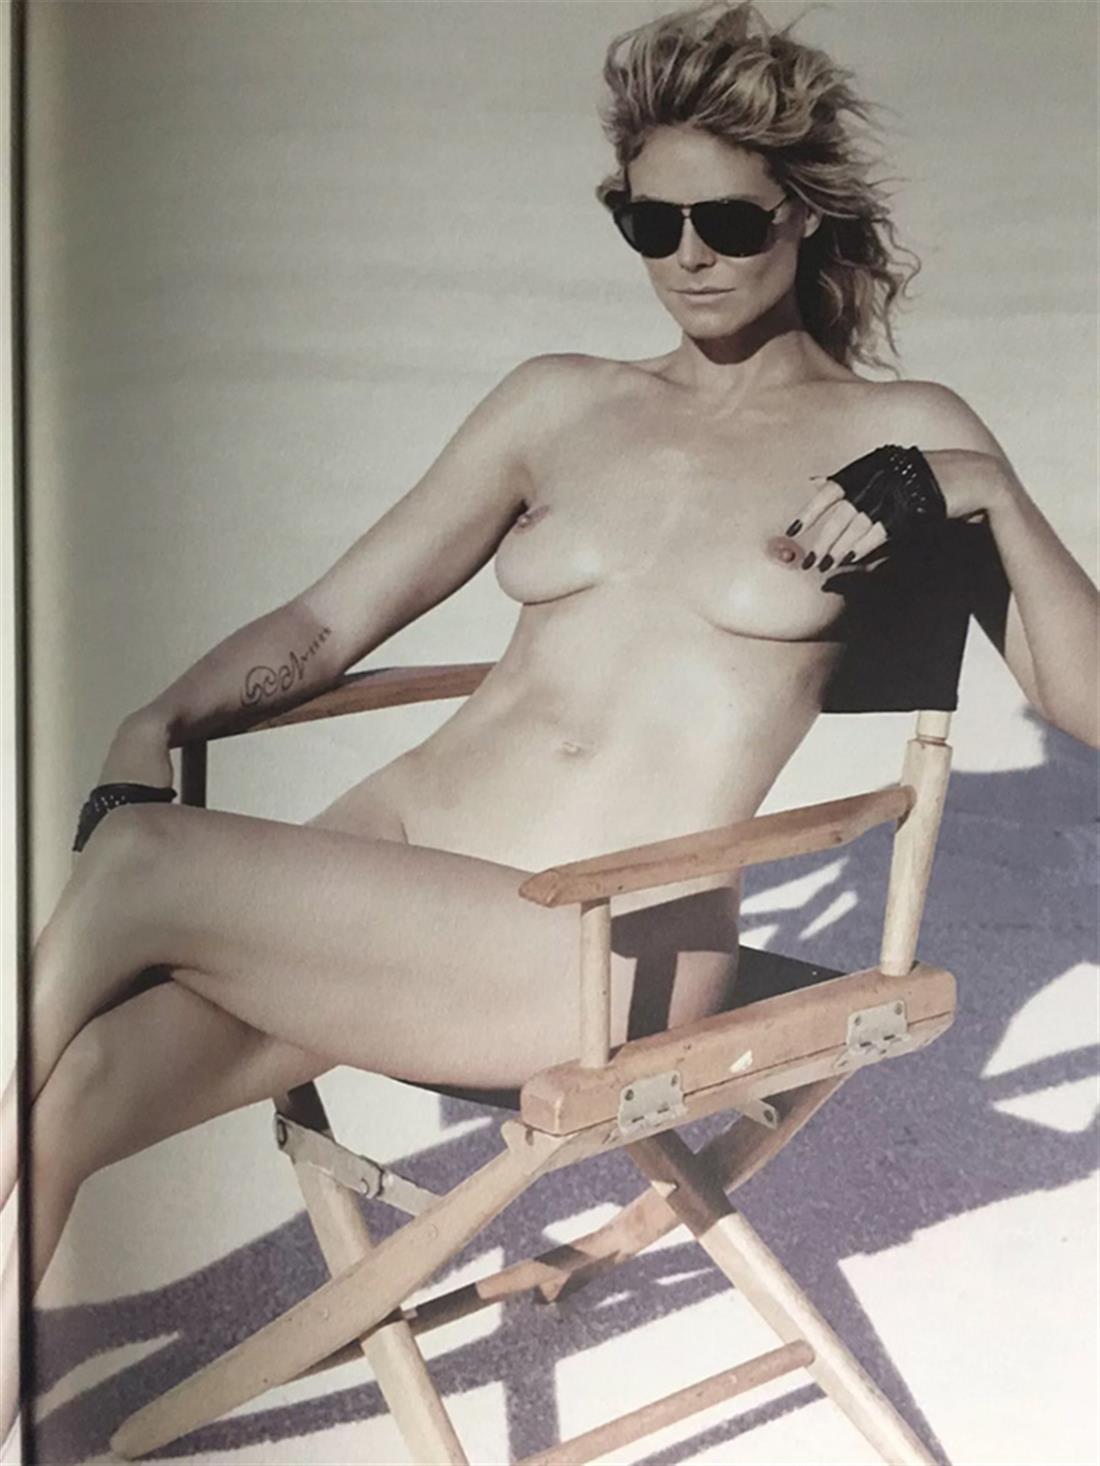 Heidi Klum - γυμνή - φωτογραφίες - βιβλίο